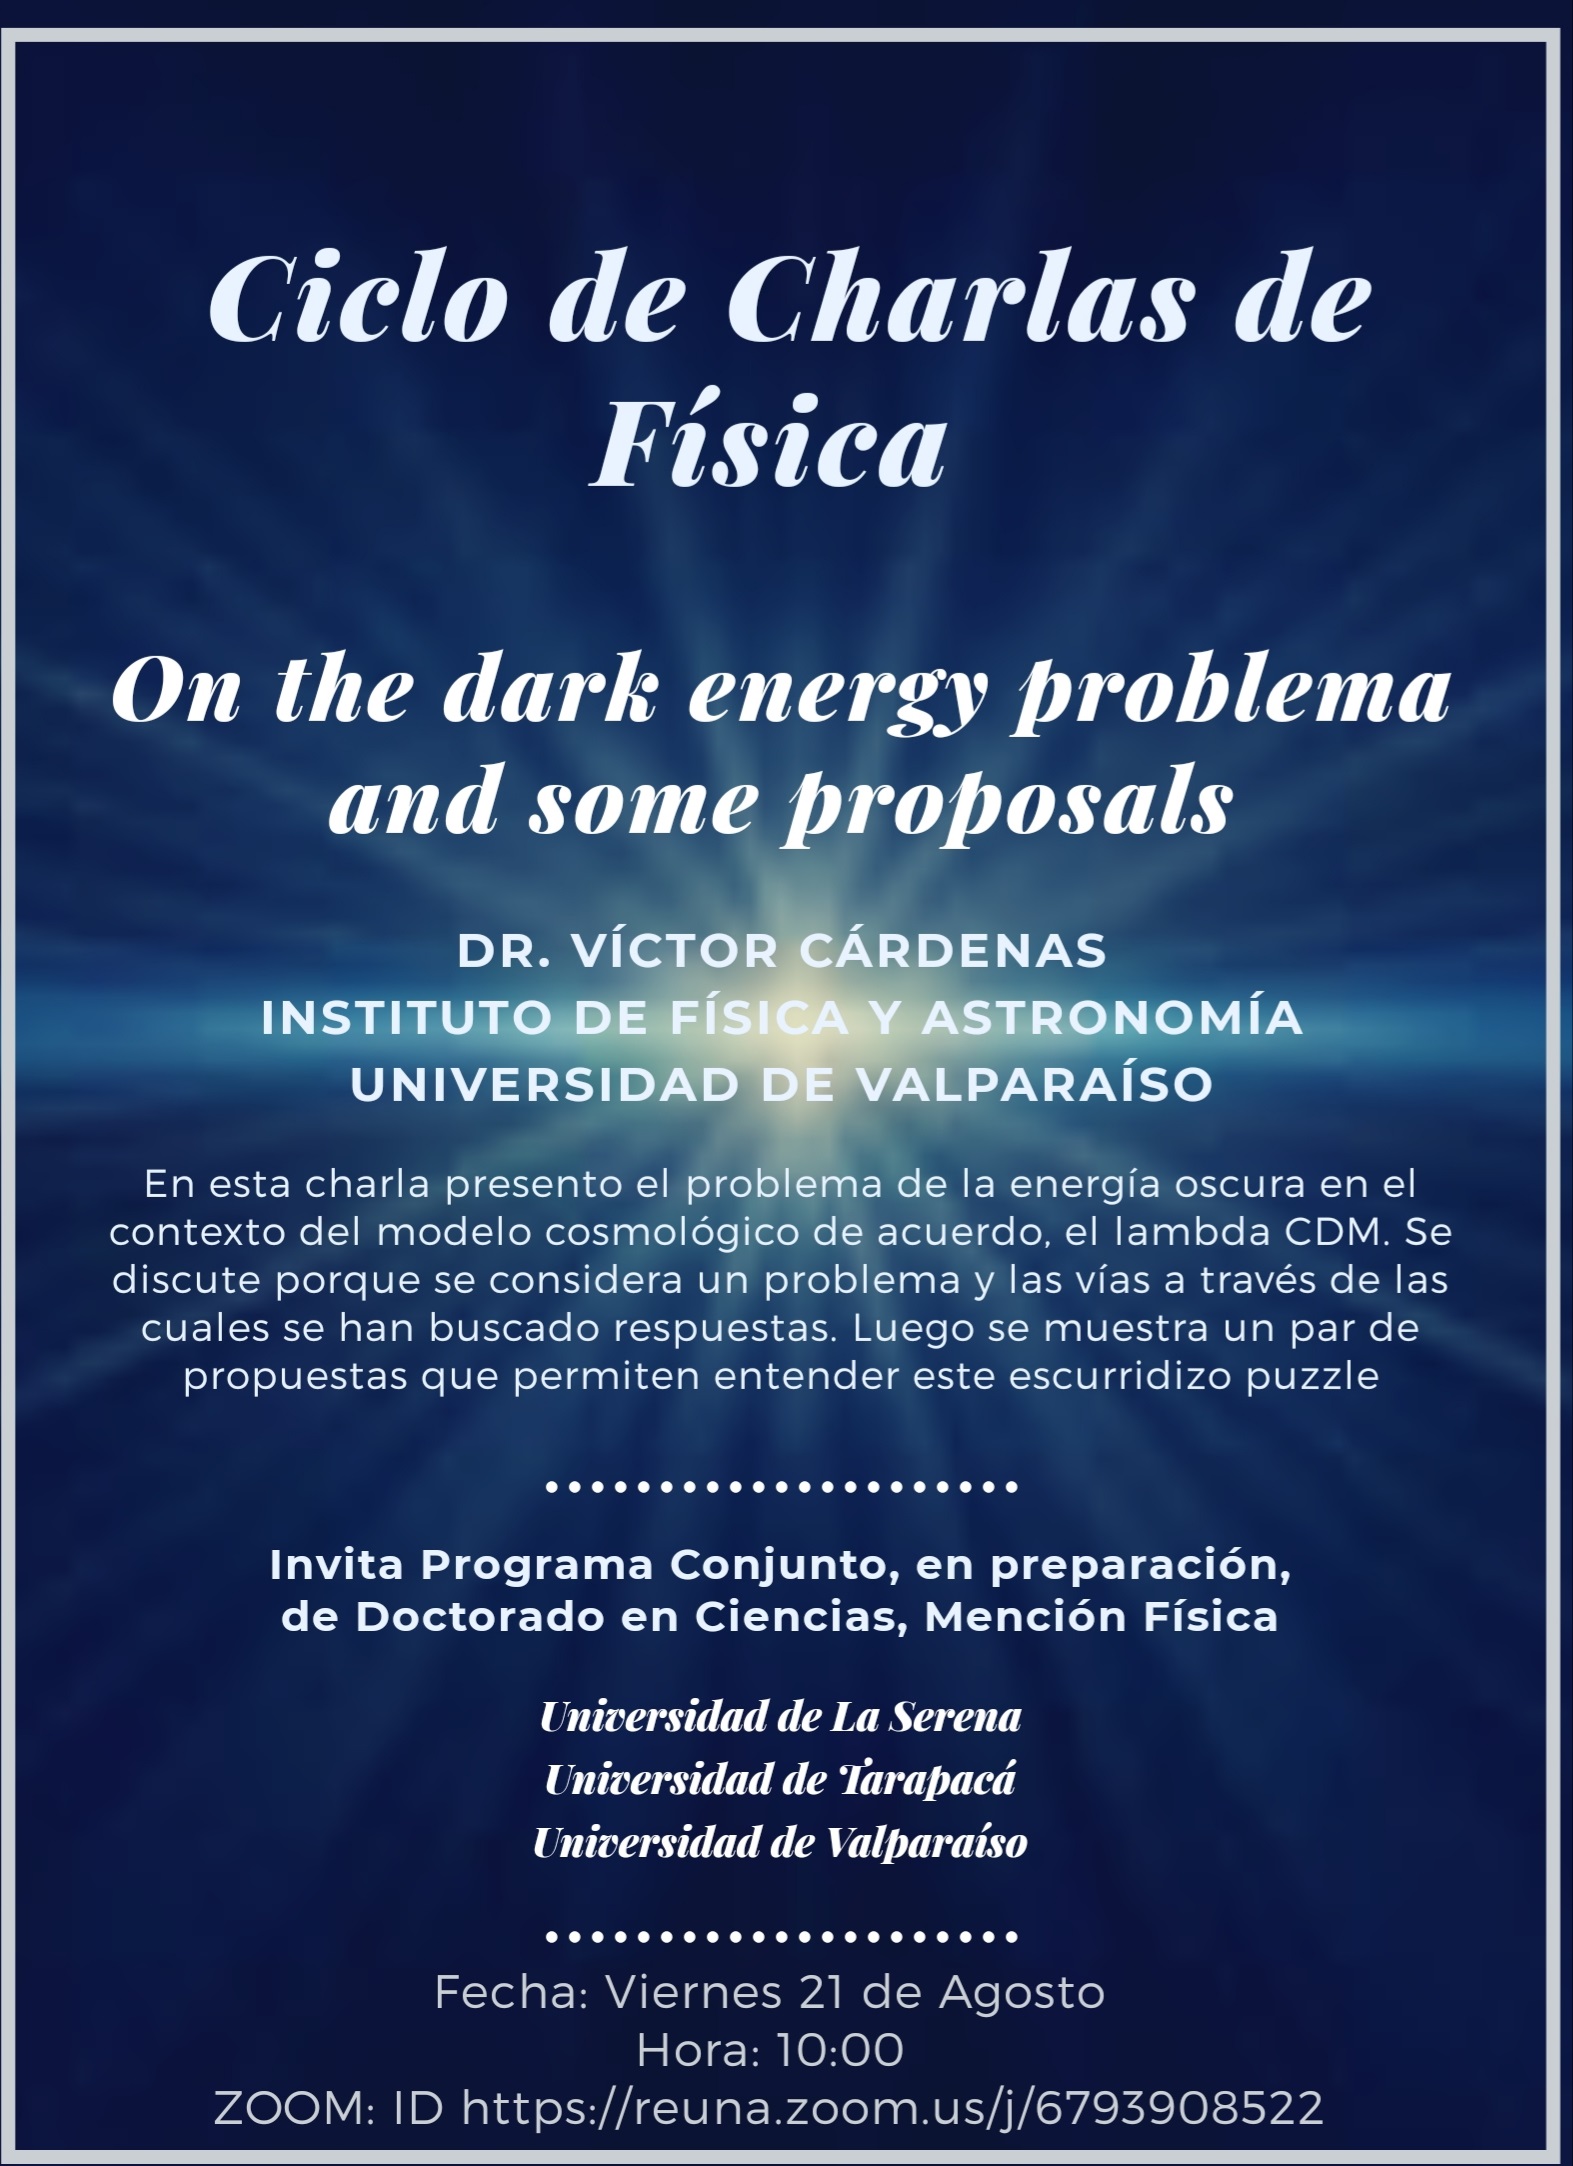 [Viernes 10 am] Ciclo de Charlas de Física: “On the dark energy problema and some proposals”